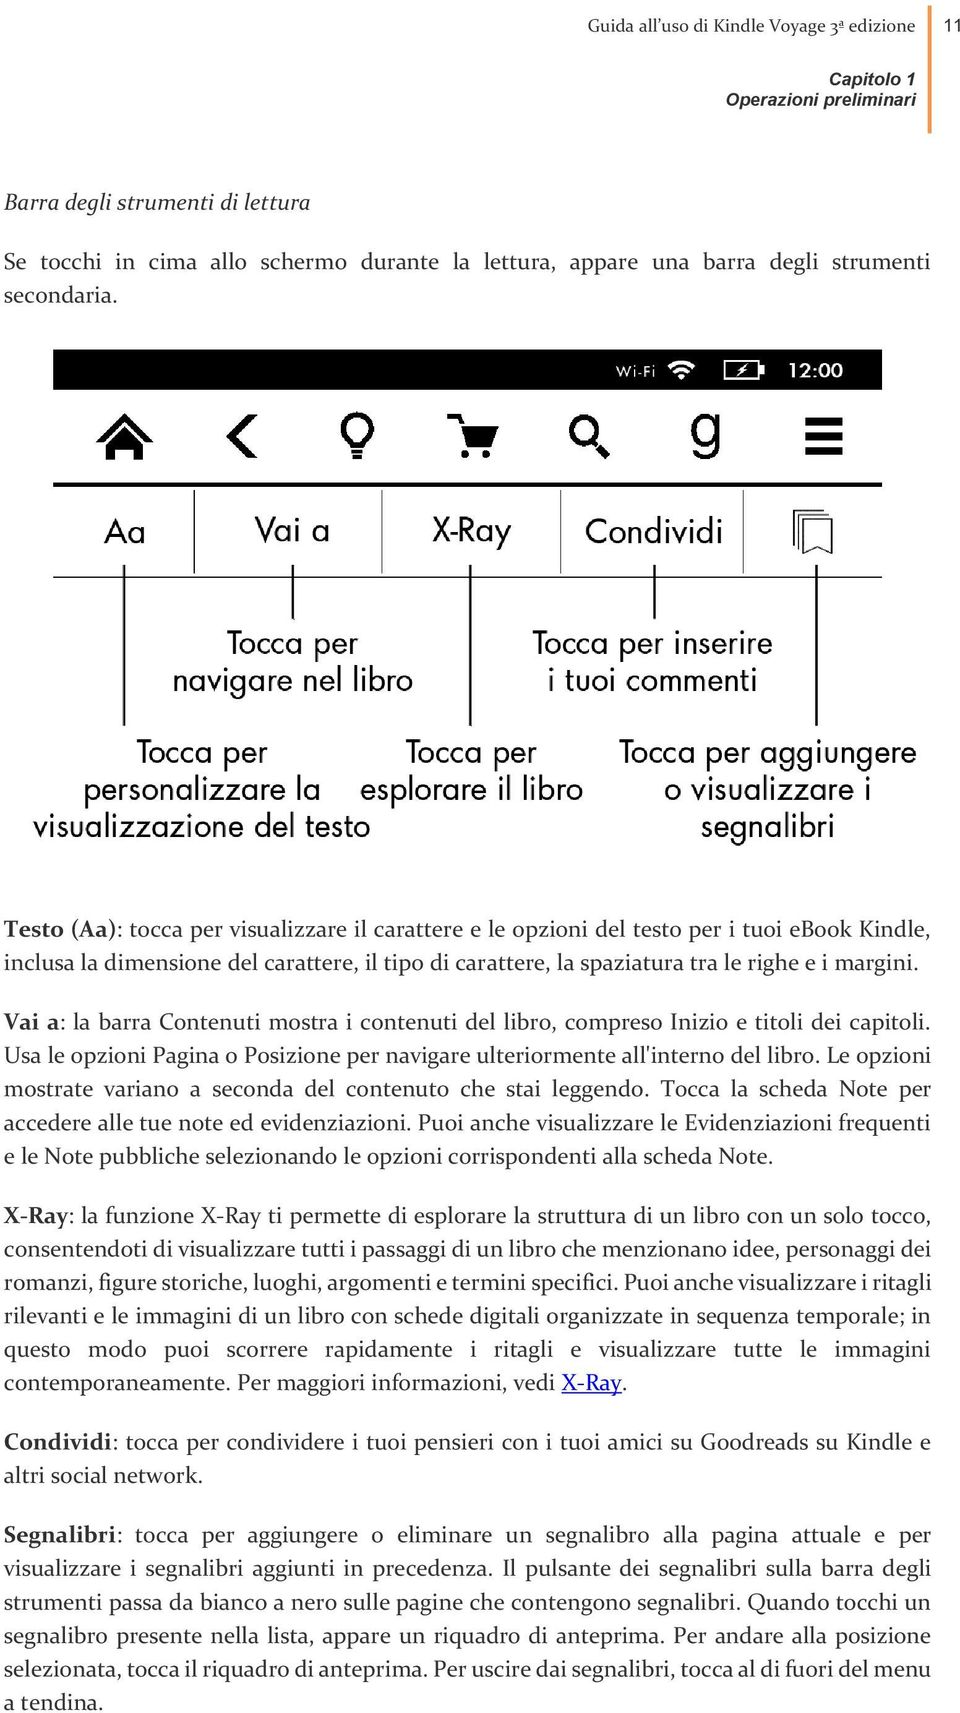 Testo (Aa): tocca per visualizzare il carattere e le opzioni del testo per i tuoi ebook Kindle, inclusa la dimensione del carattere, il tipo di carattere, la spaziatura tra le righe e i margini.